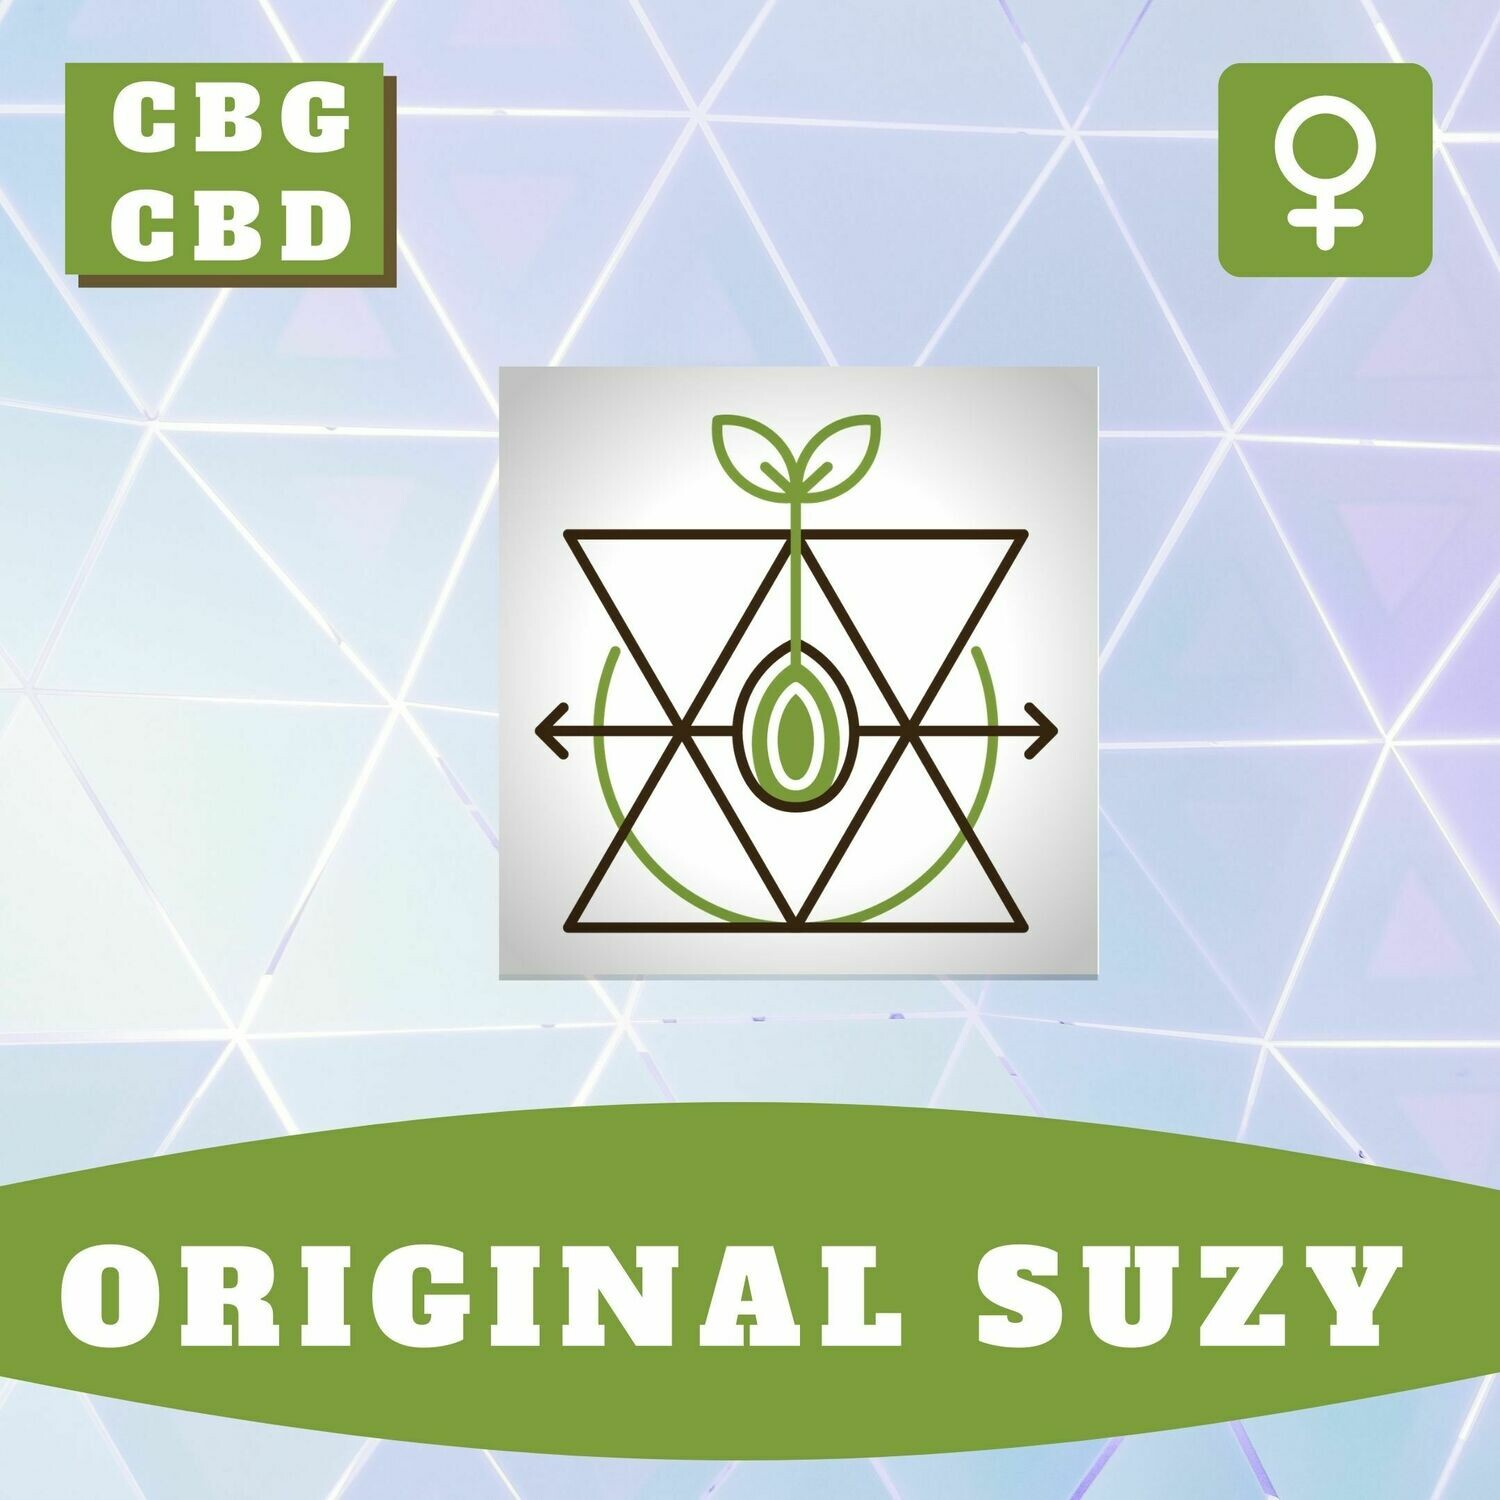 Original Suzy CBG